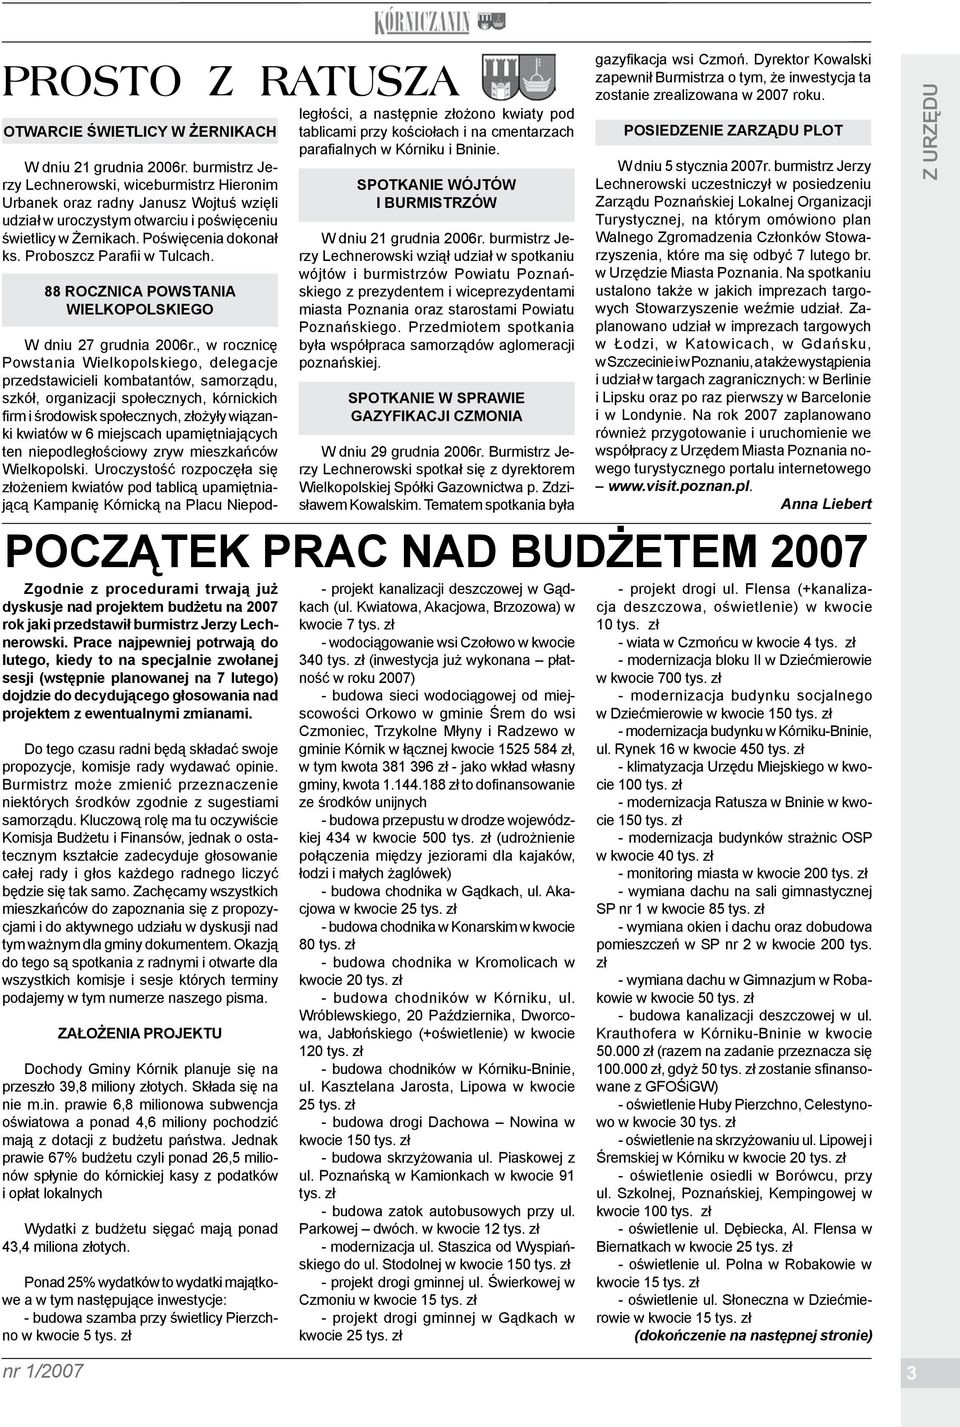 Proboszcz Parafii w Tulcach. 88 rocznica Powstania Wielkopolskiego W dniu 27 grudnia 2006r.